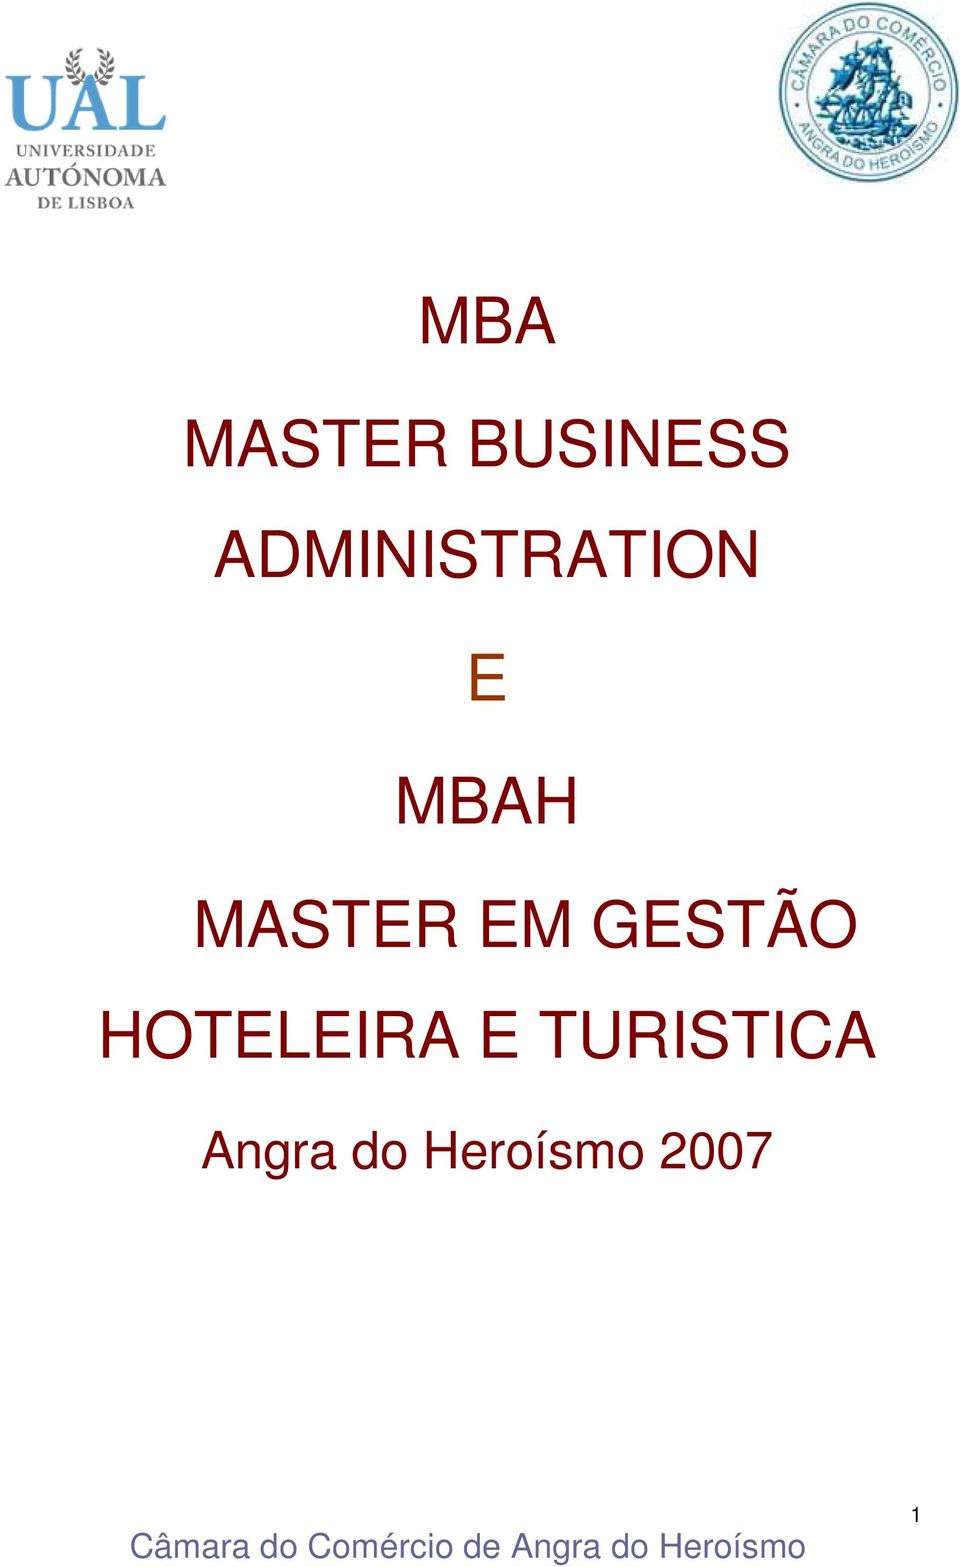 MASTER EM GESTÃO HOTELEIRA